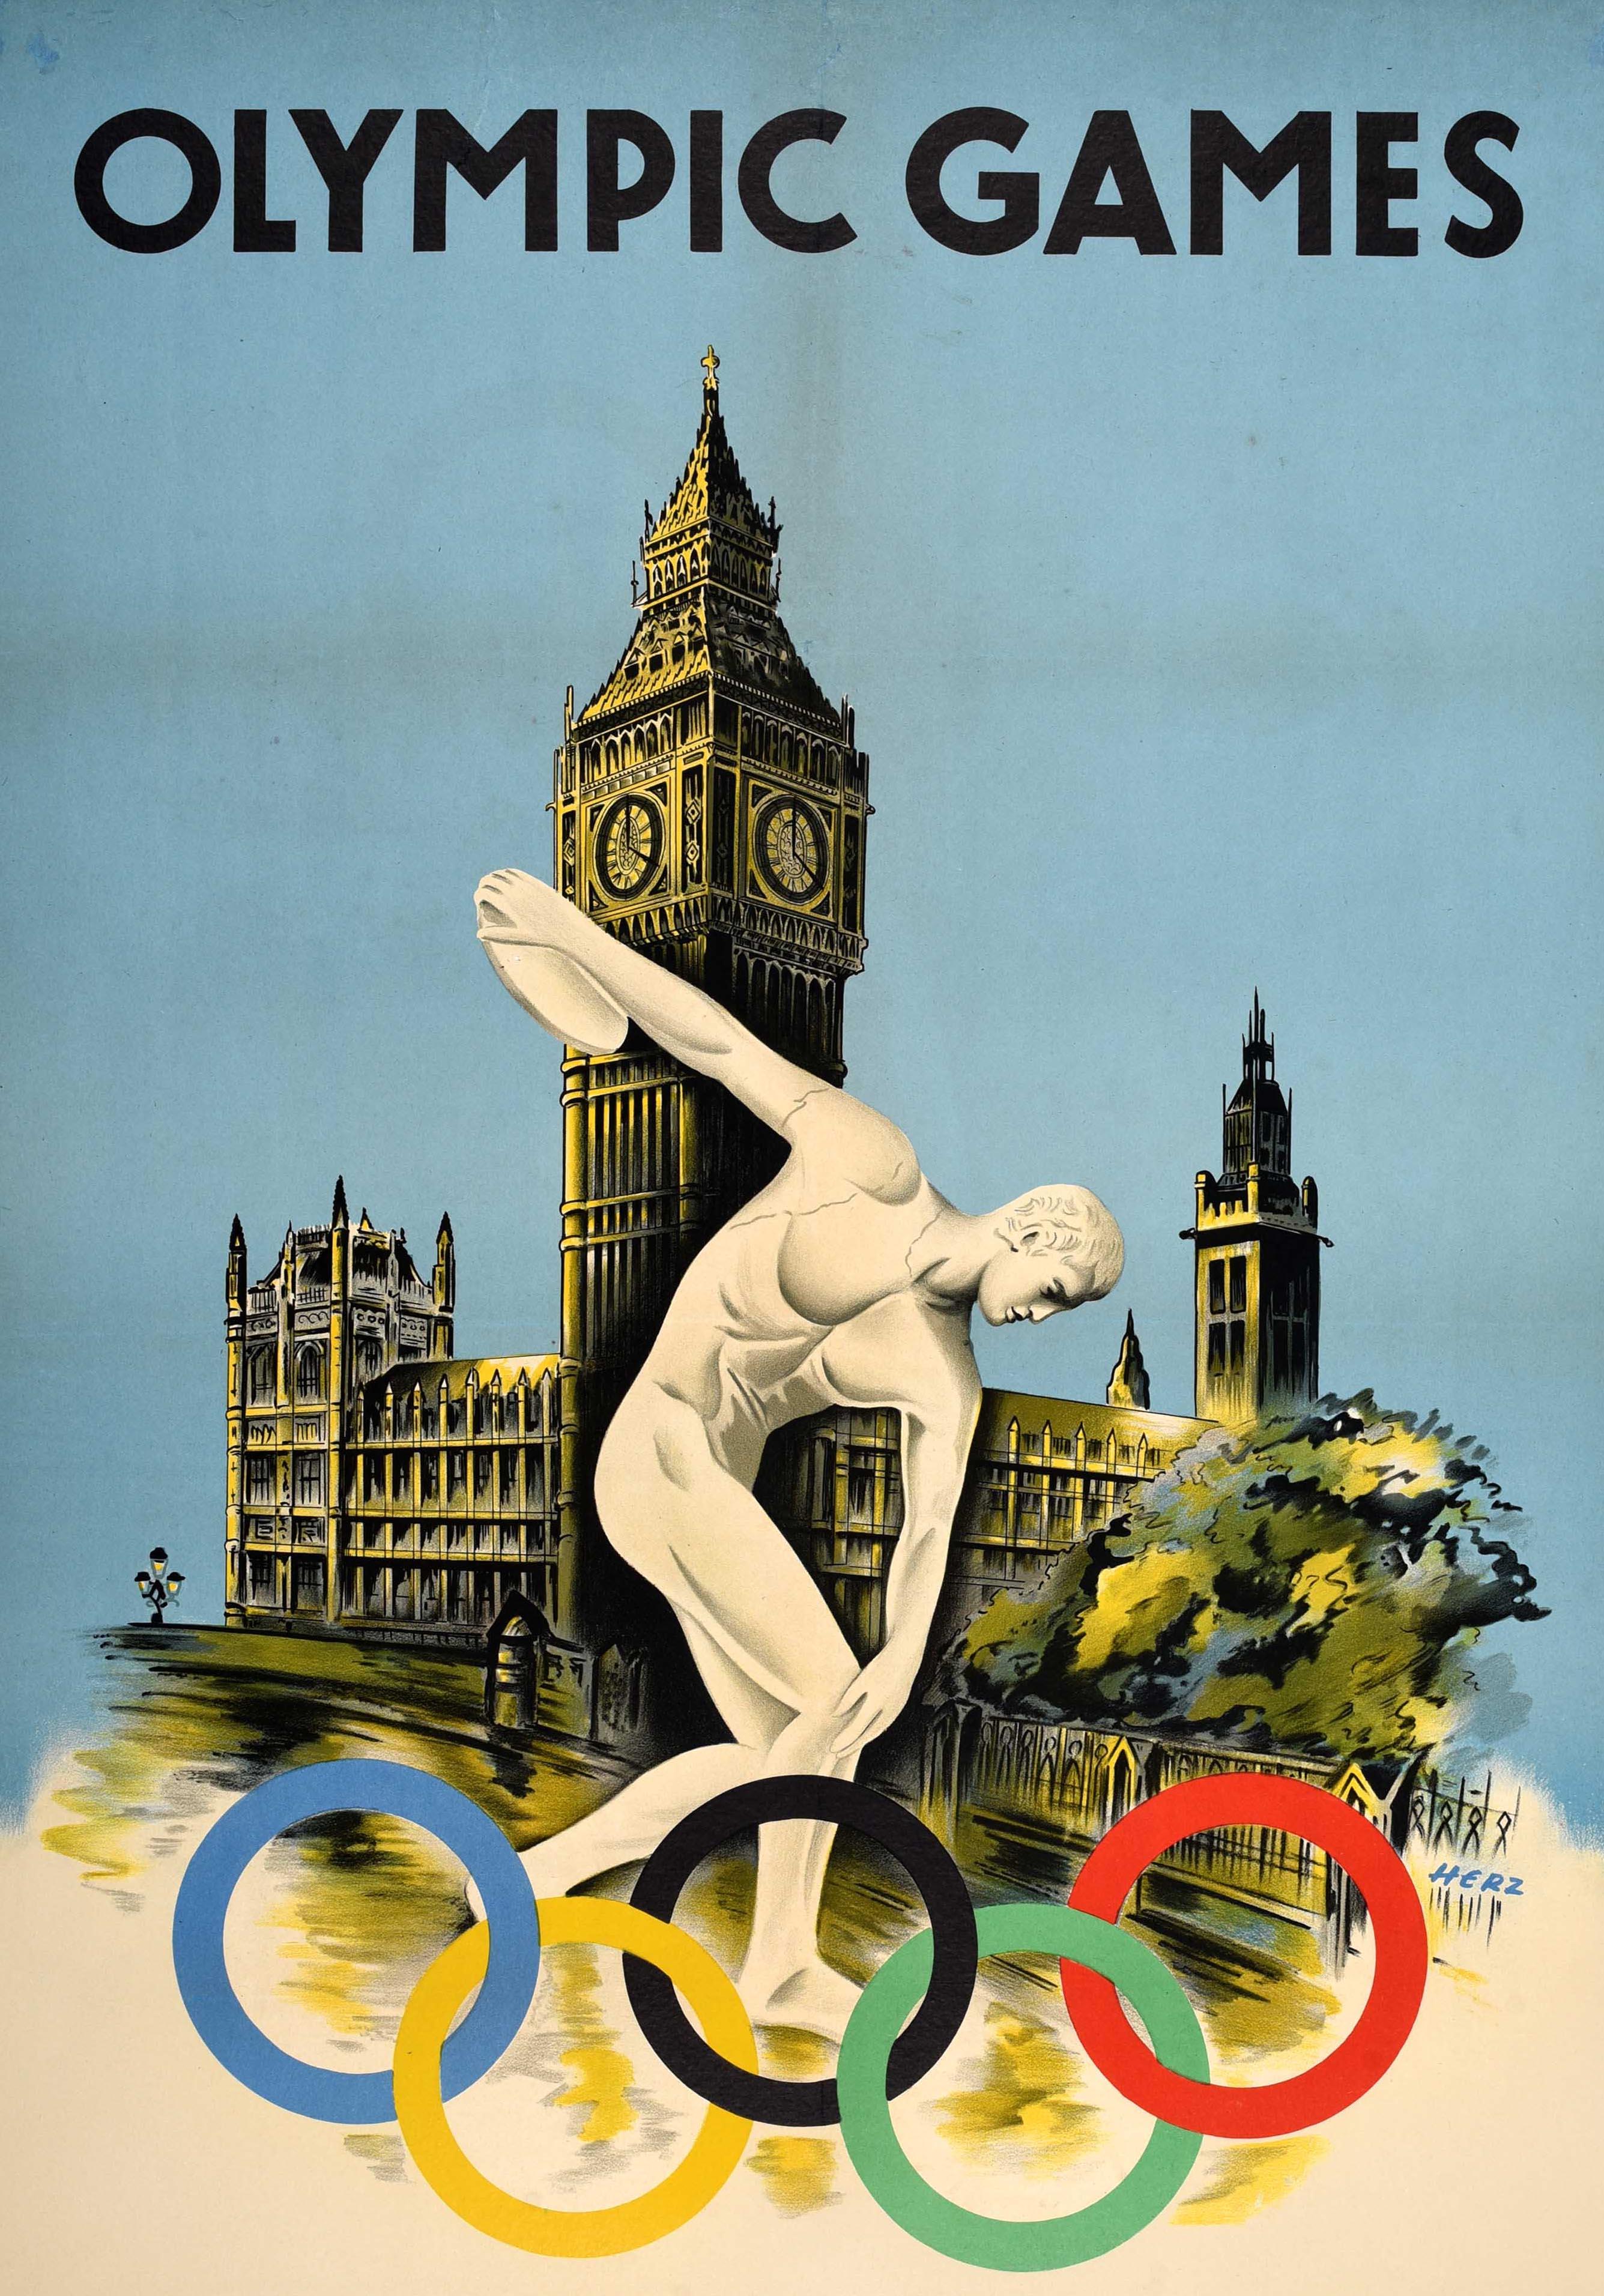 Affiche originale d'époque pour les Jeux Olympiques de Londres de 1948 qui se sont déroulés du 29 juillet au 14 août, les premiers Jeux organisés après la Seconde Guerre mondiale. Dessin emblématique de Walter Herz (né en 1909) représentant la